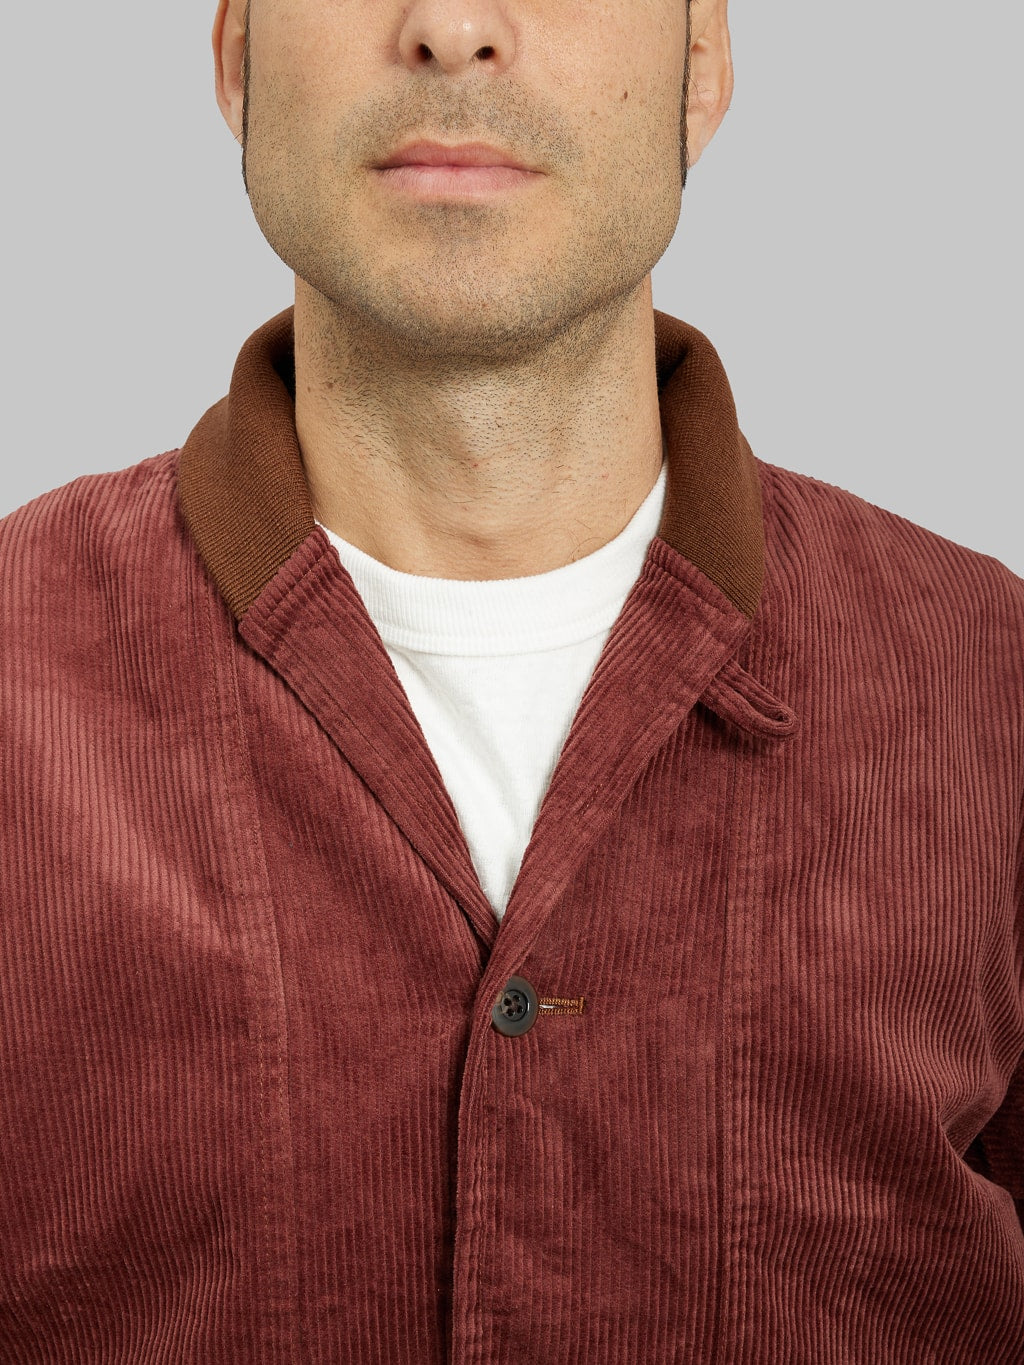 Tanuki Sazanami Corduro mud Dyed brown Jacket shawl collar